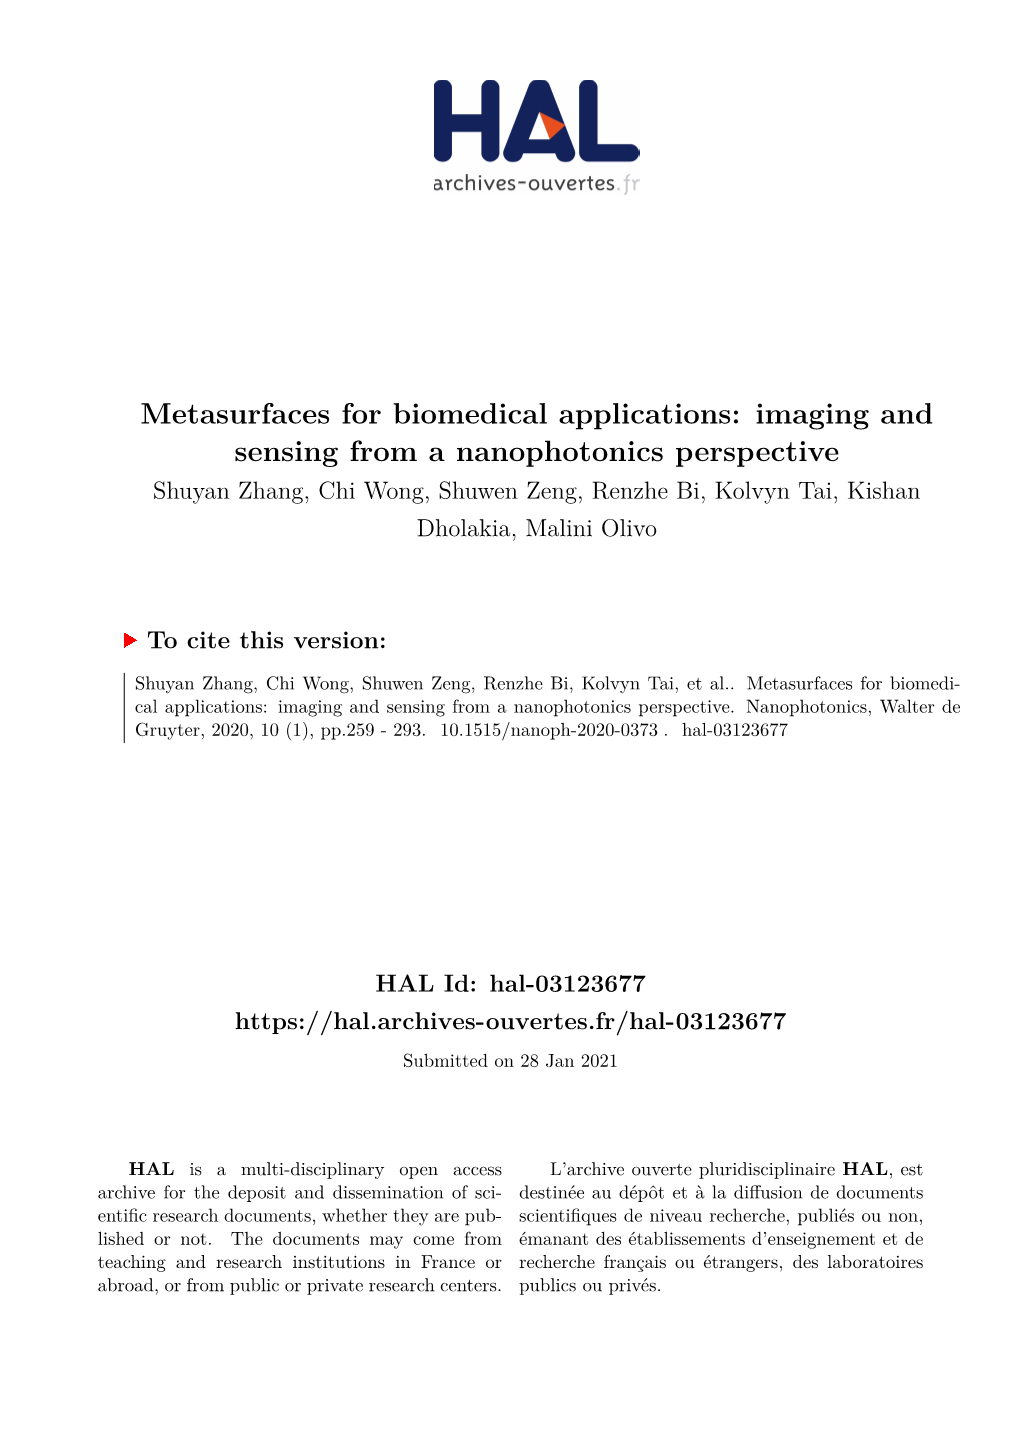 Metasurfaces for Biomedical Applications: Imaging and Sensing